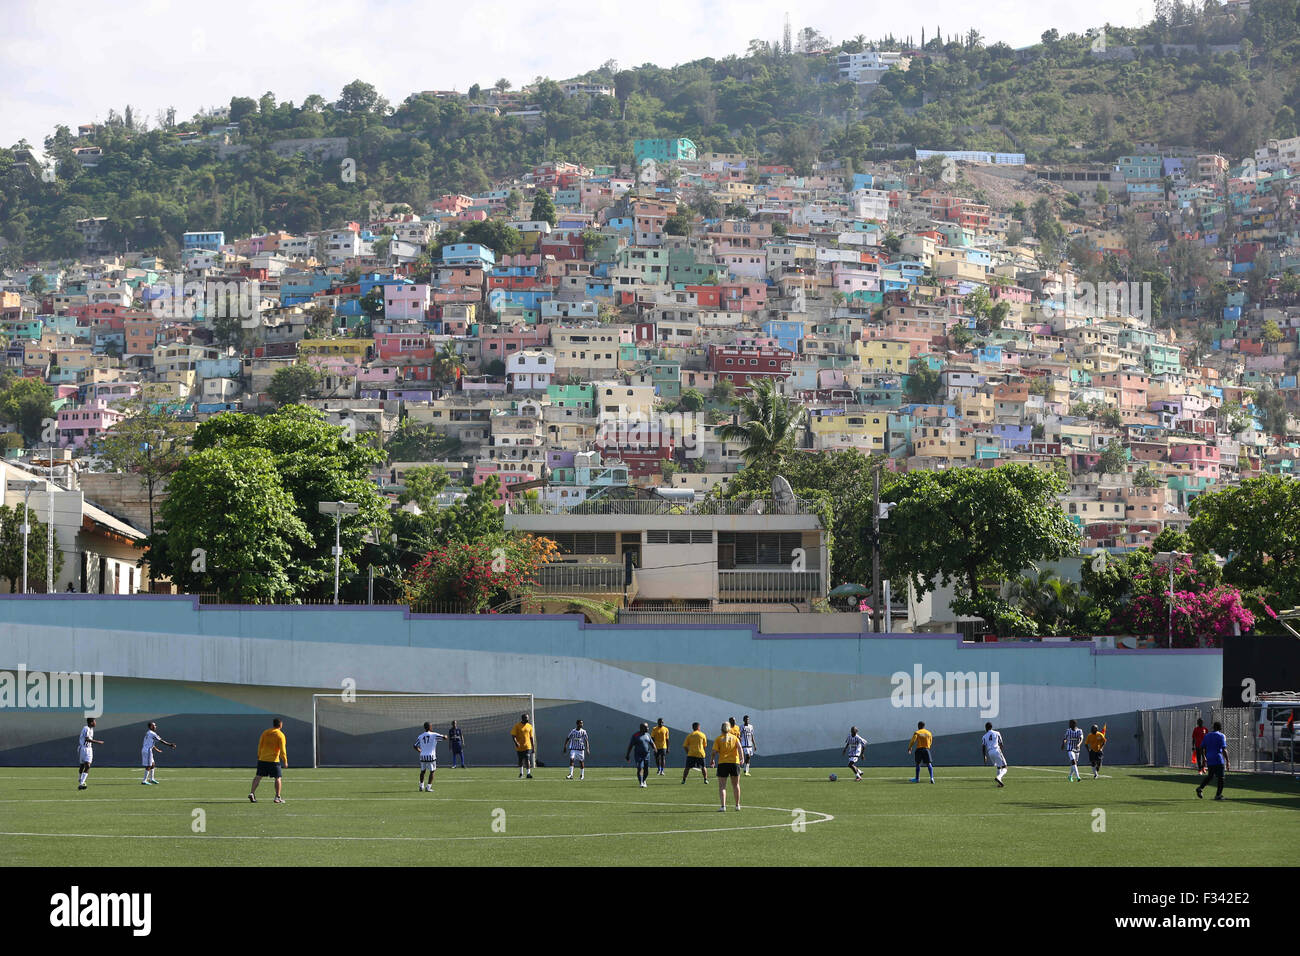 Adulti giocare a calcio al Parco Sainte Therese al campo di calcio con case colorate lungo il pendio, 15 settembre 2015 a Port-au-Prince, Haiti. Foto Stock